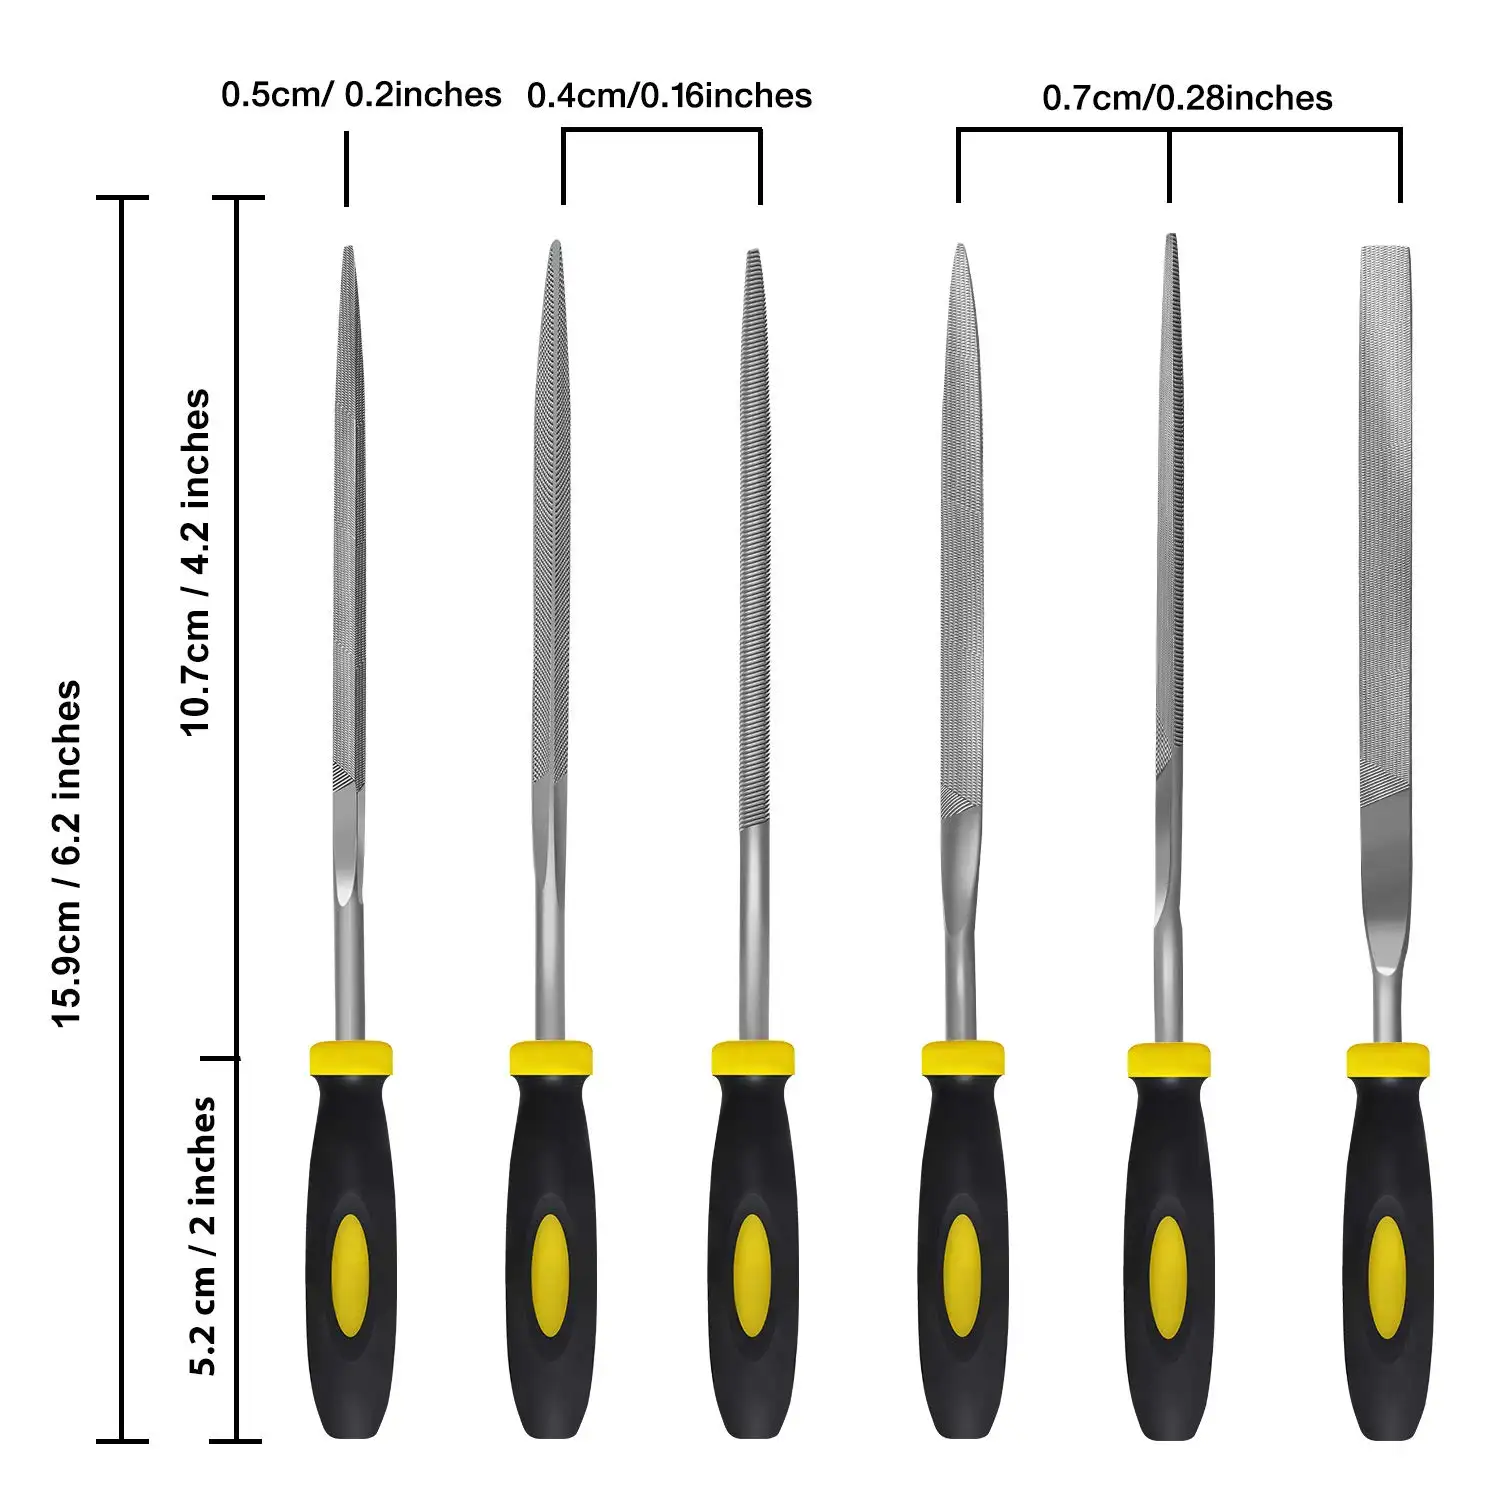 Juego de limas de aguja de metal de 6 piezas: acero de aleación endurecido incluye limas planas, de protección, cuadradas, triangulares, redondas y semiredondas